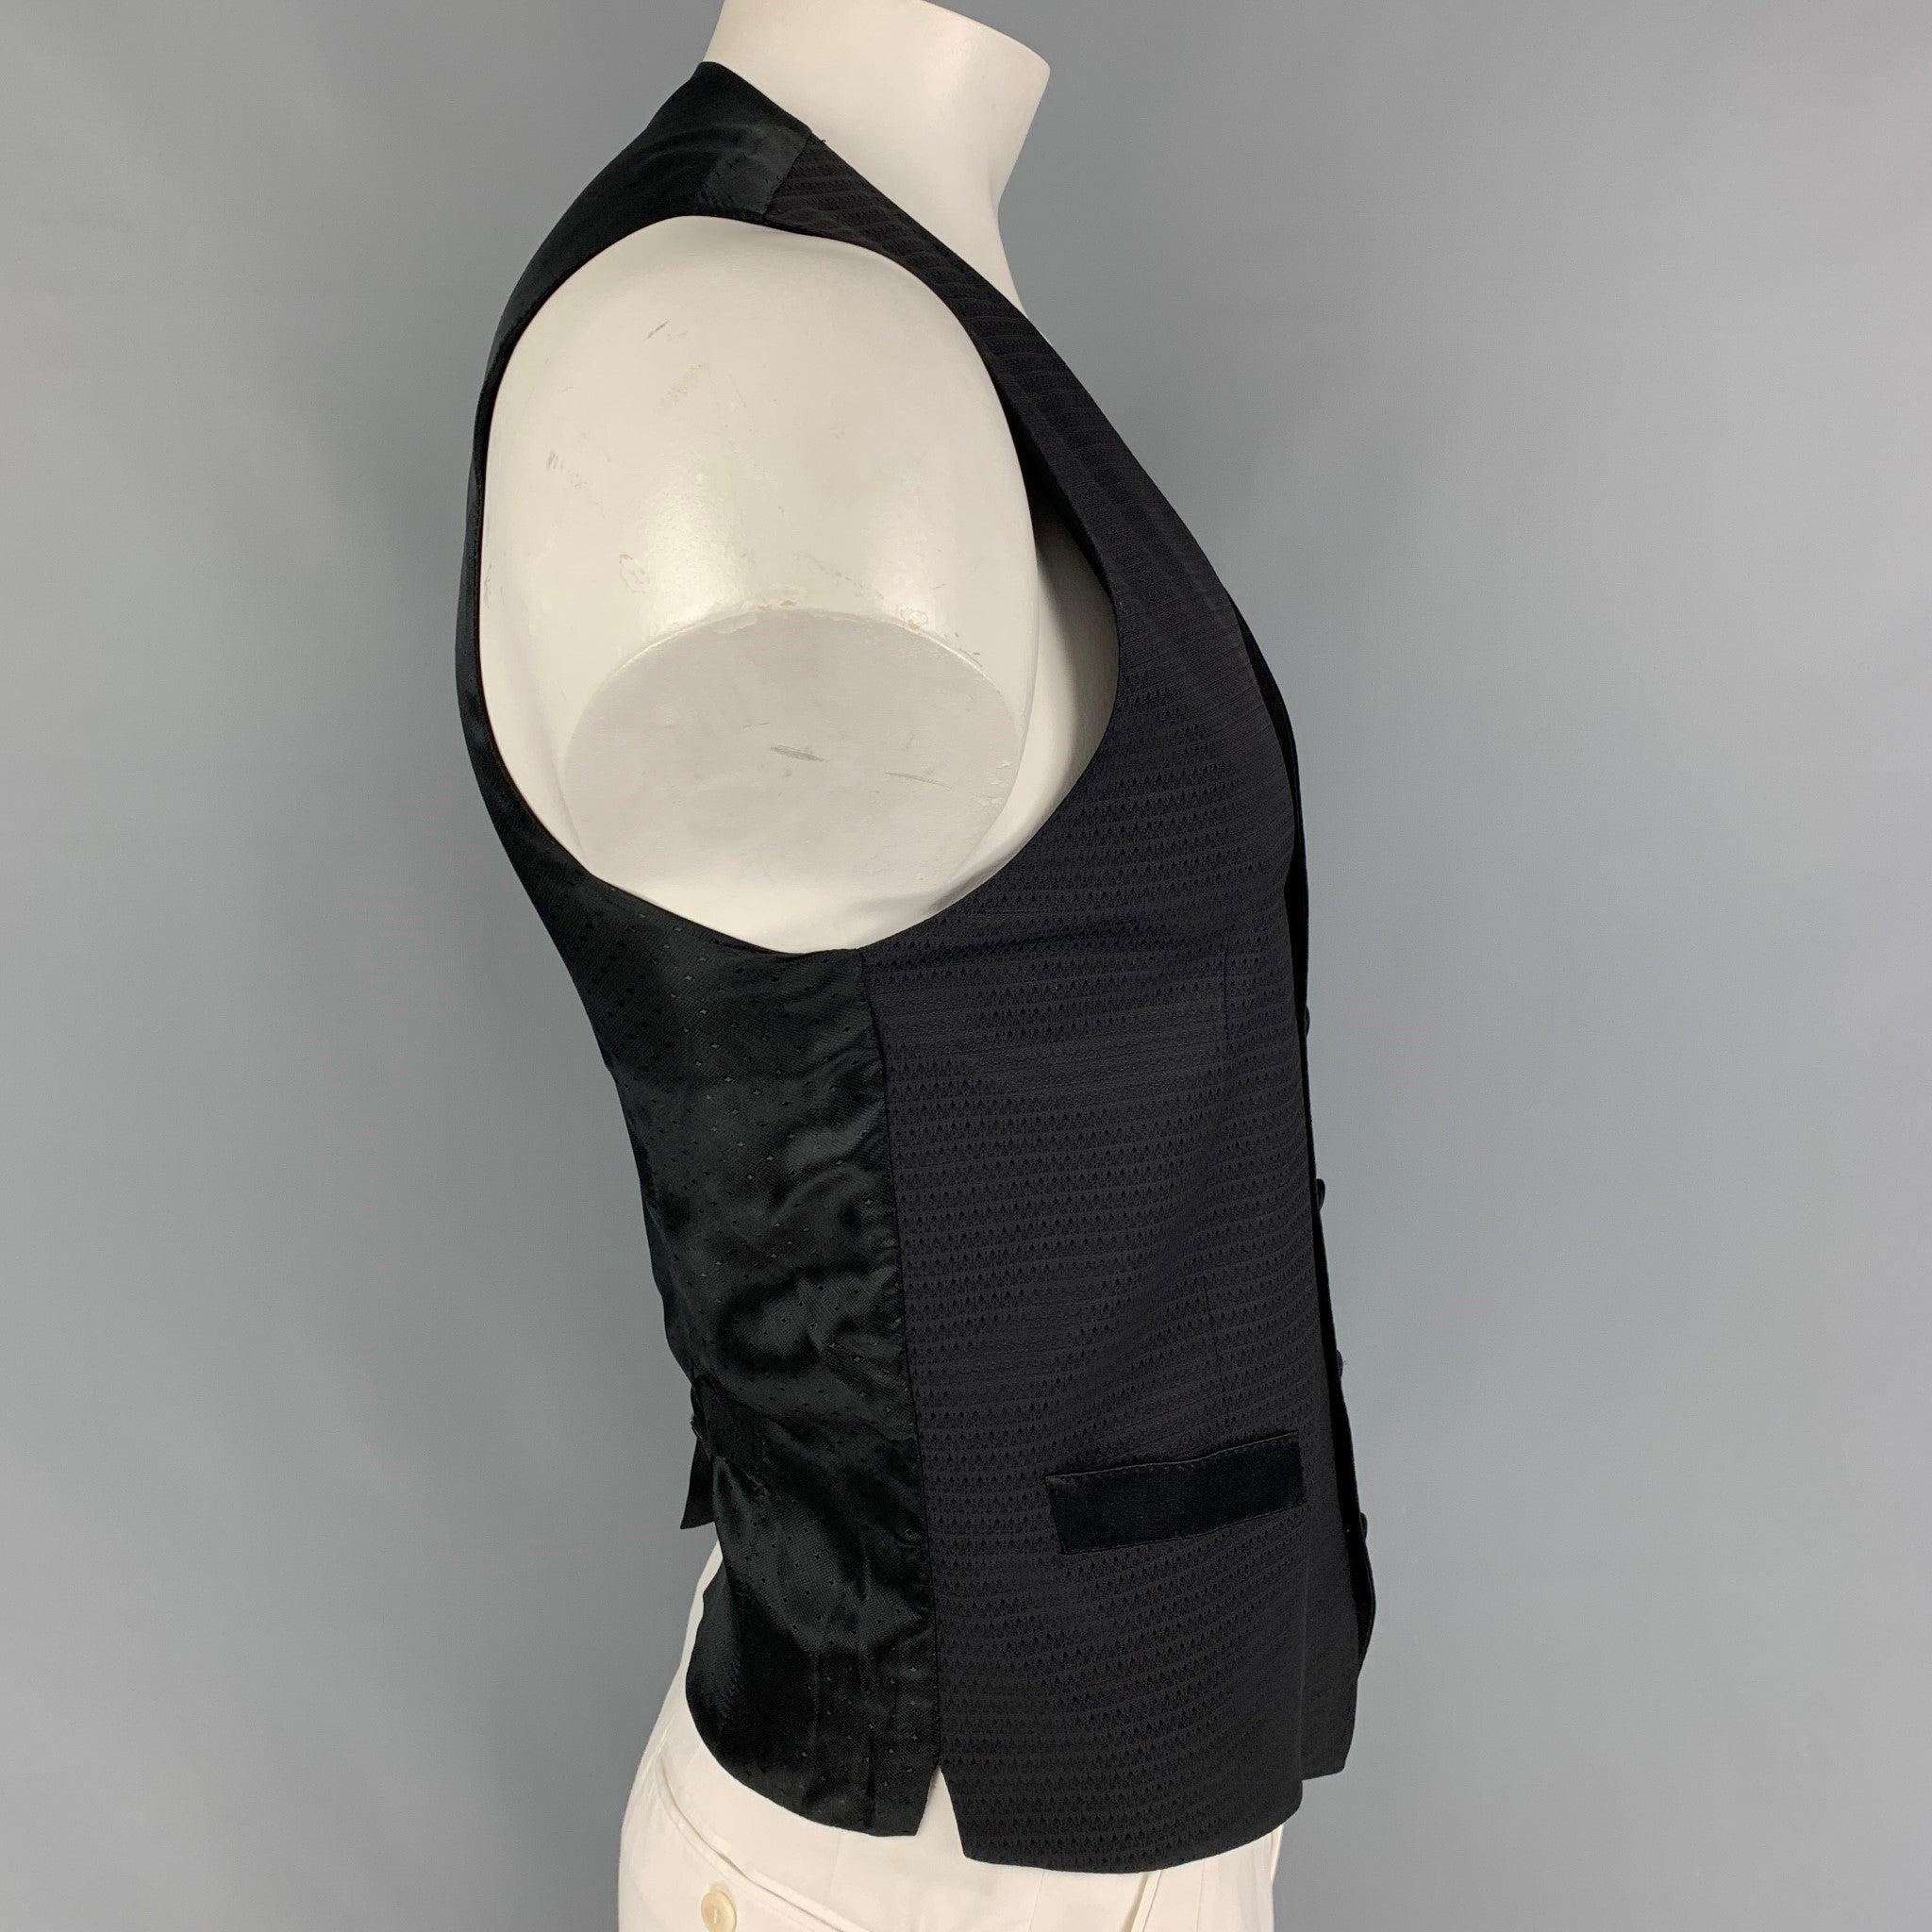 Die Weste von DOLCE & GABBANA ist aus einer schwarzen Jacquard-Wollmischung gefertigt und verfügt über einen Gürtel auf der Rückseite, geschlitzte Taschen und einen Verschluss mit Knöpfen. Hergestellt in Italien.
Sehr gut
Gebrauchtes Zustand.